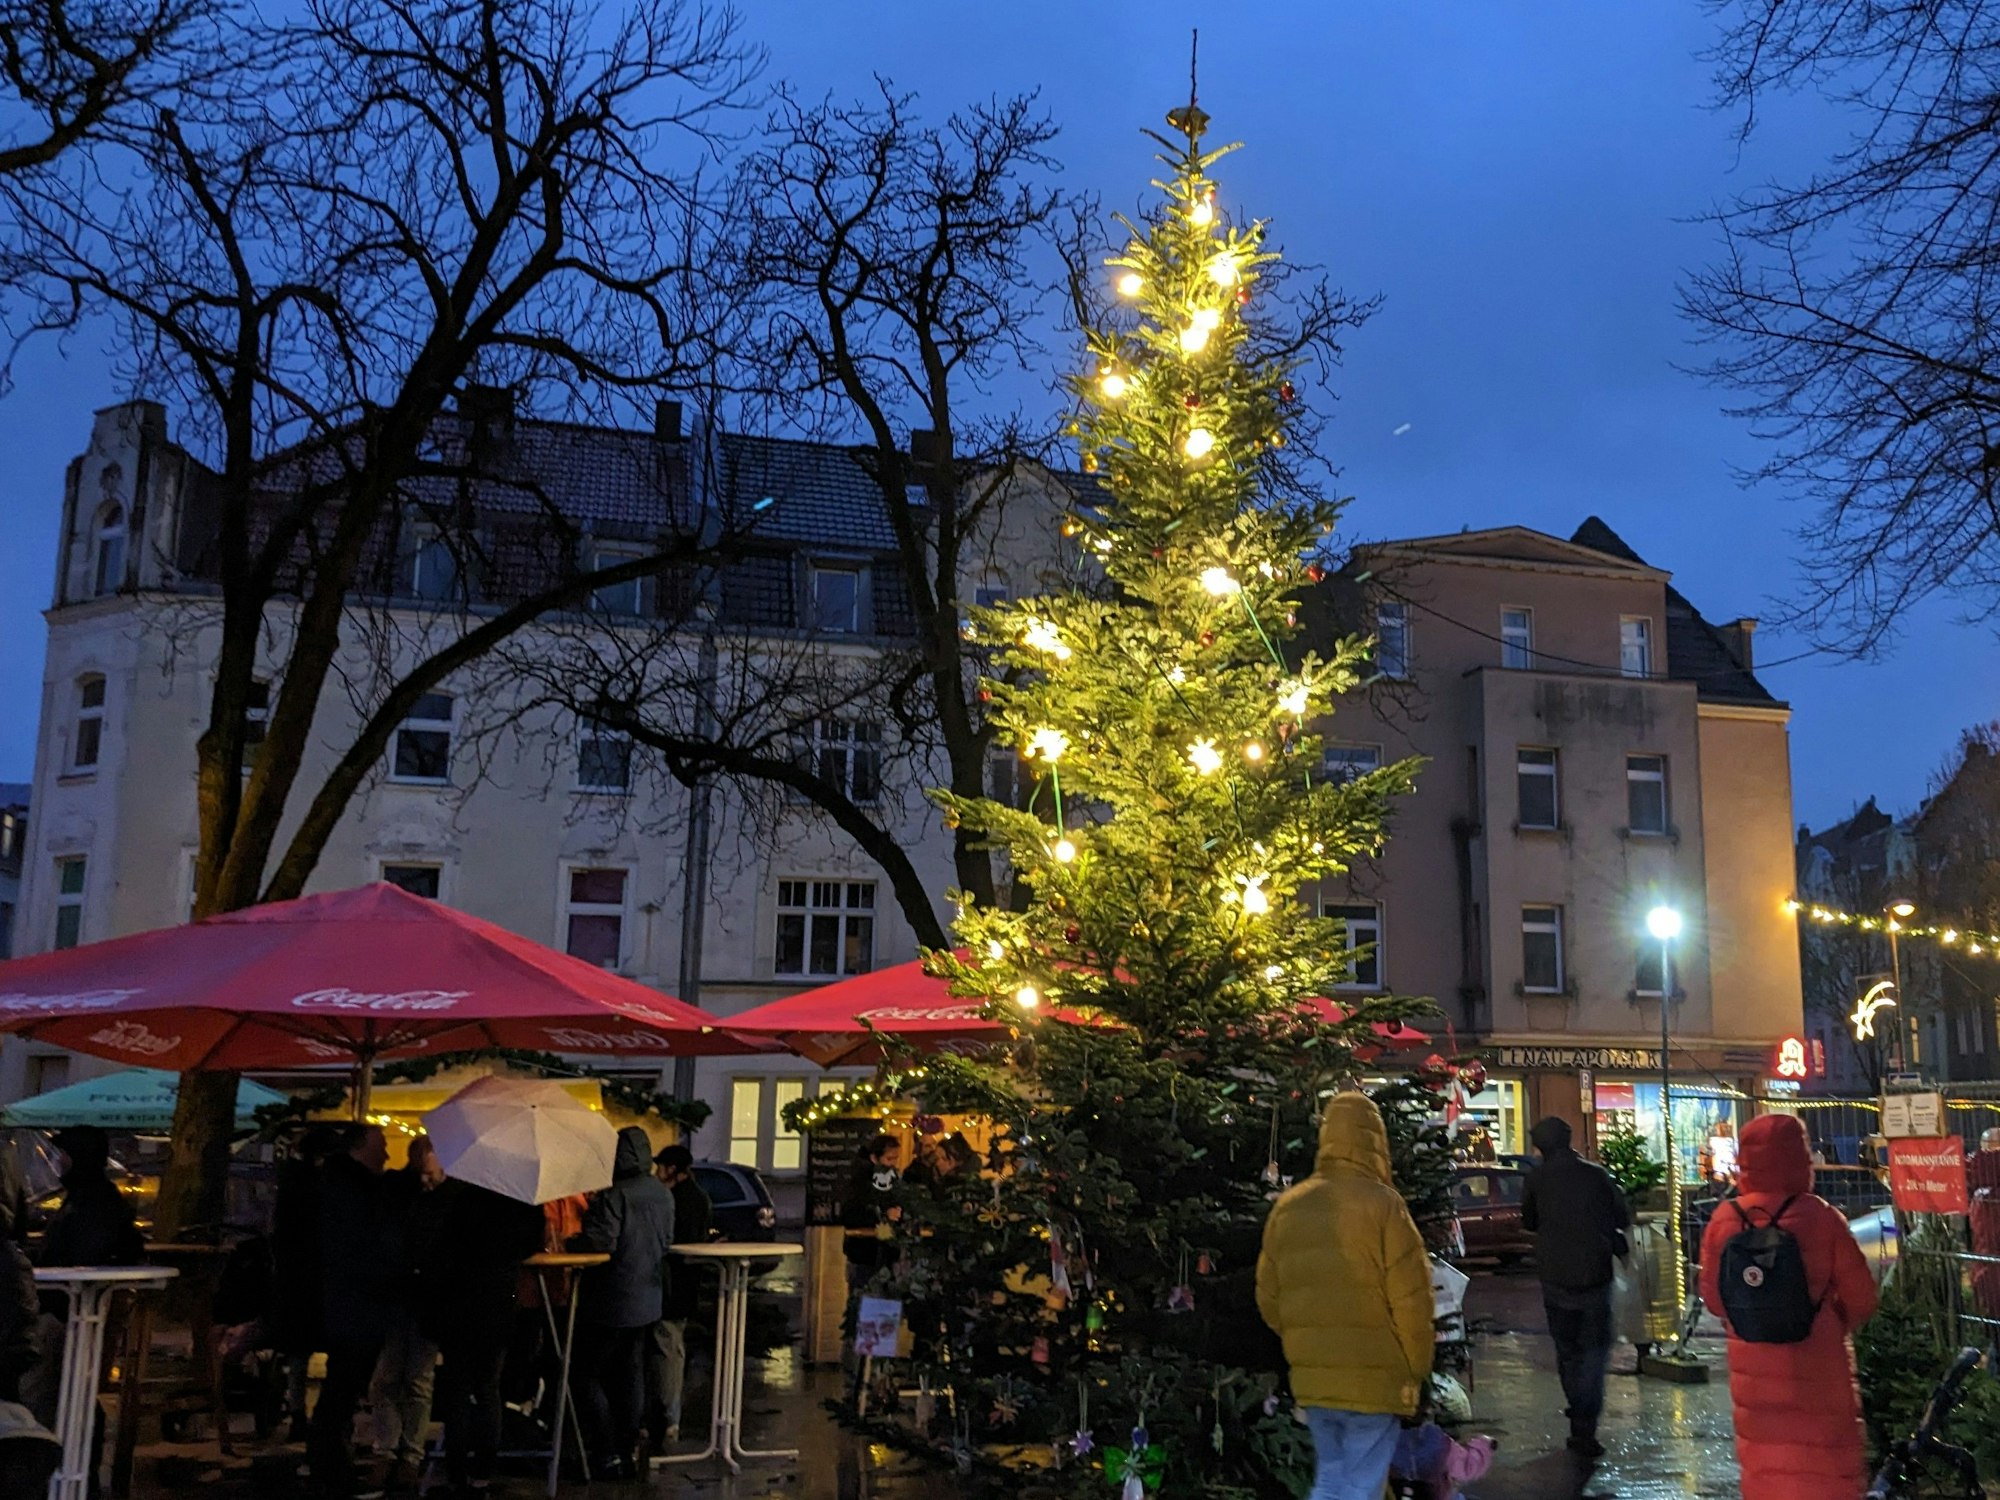 Der Weihnachtsmarkt in Neuehrenfeld: In der Mitte des Lenauplatzes steht ein großer Tannenbaum.